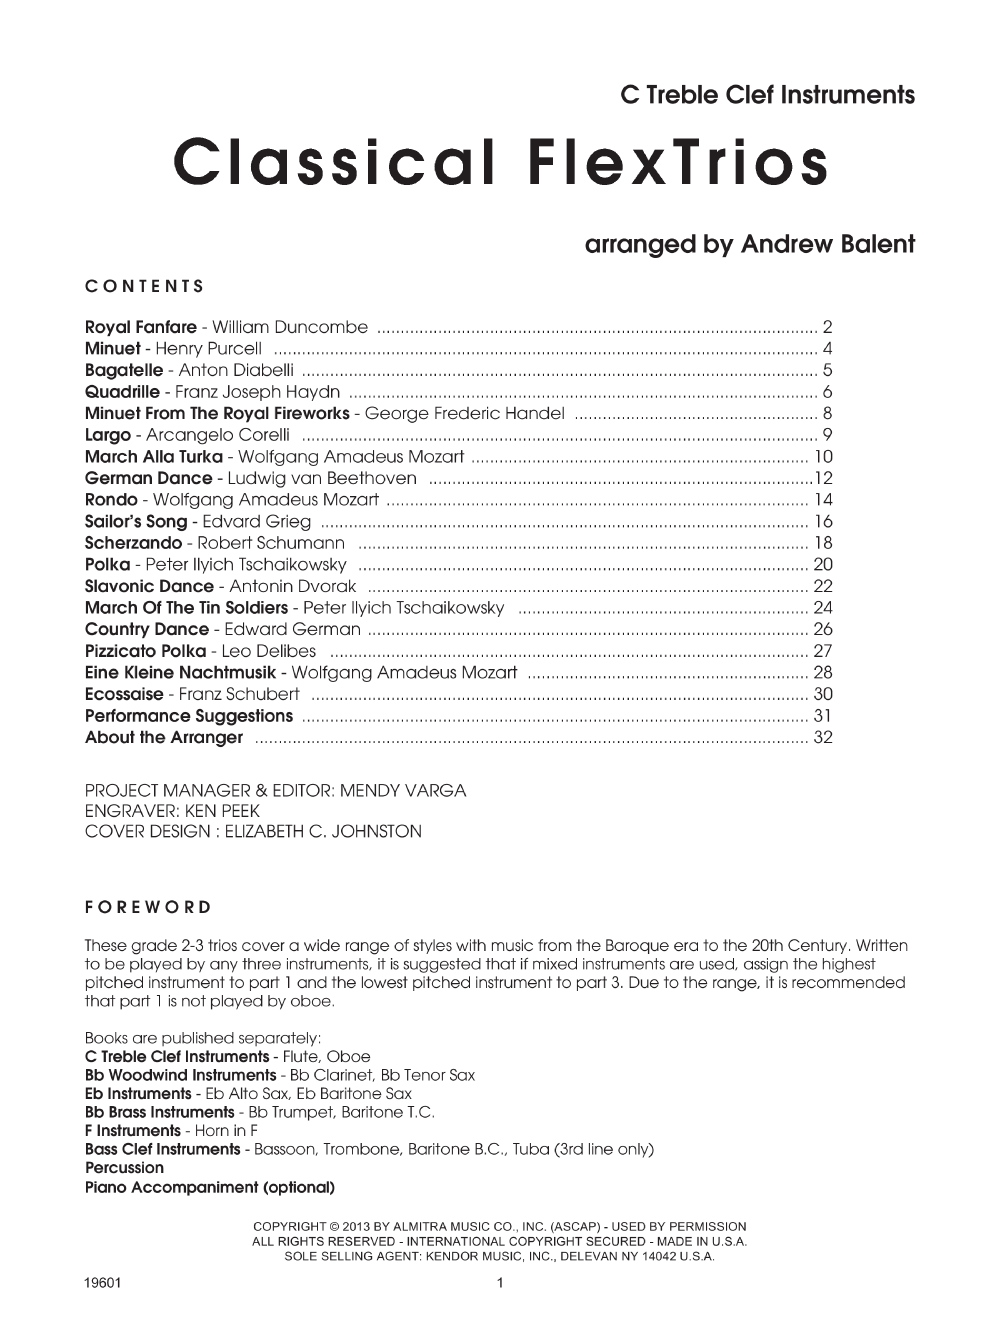 Classical FlexTrios Trumpet / Baritone TC